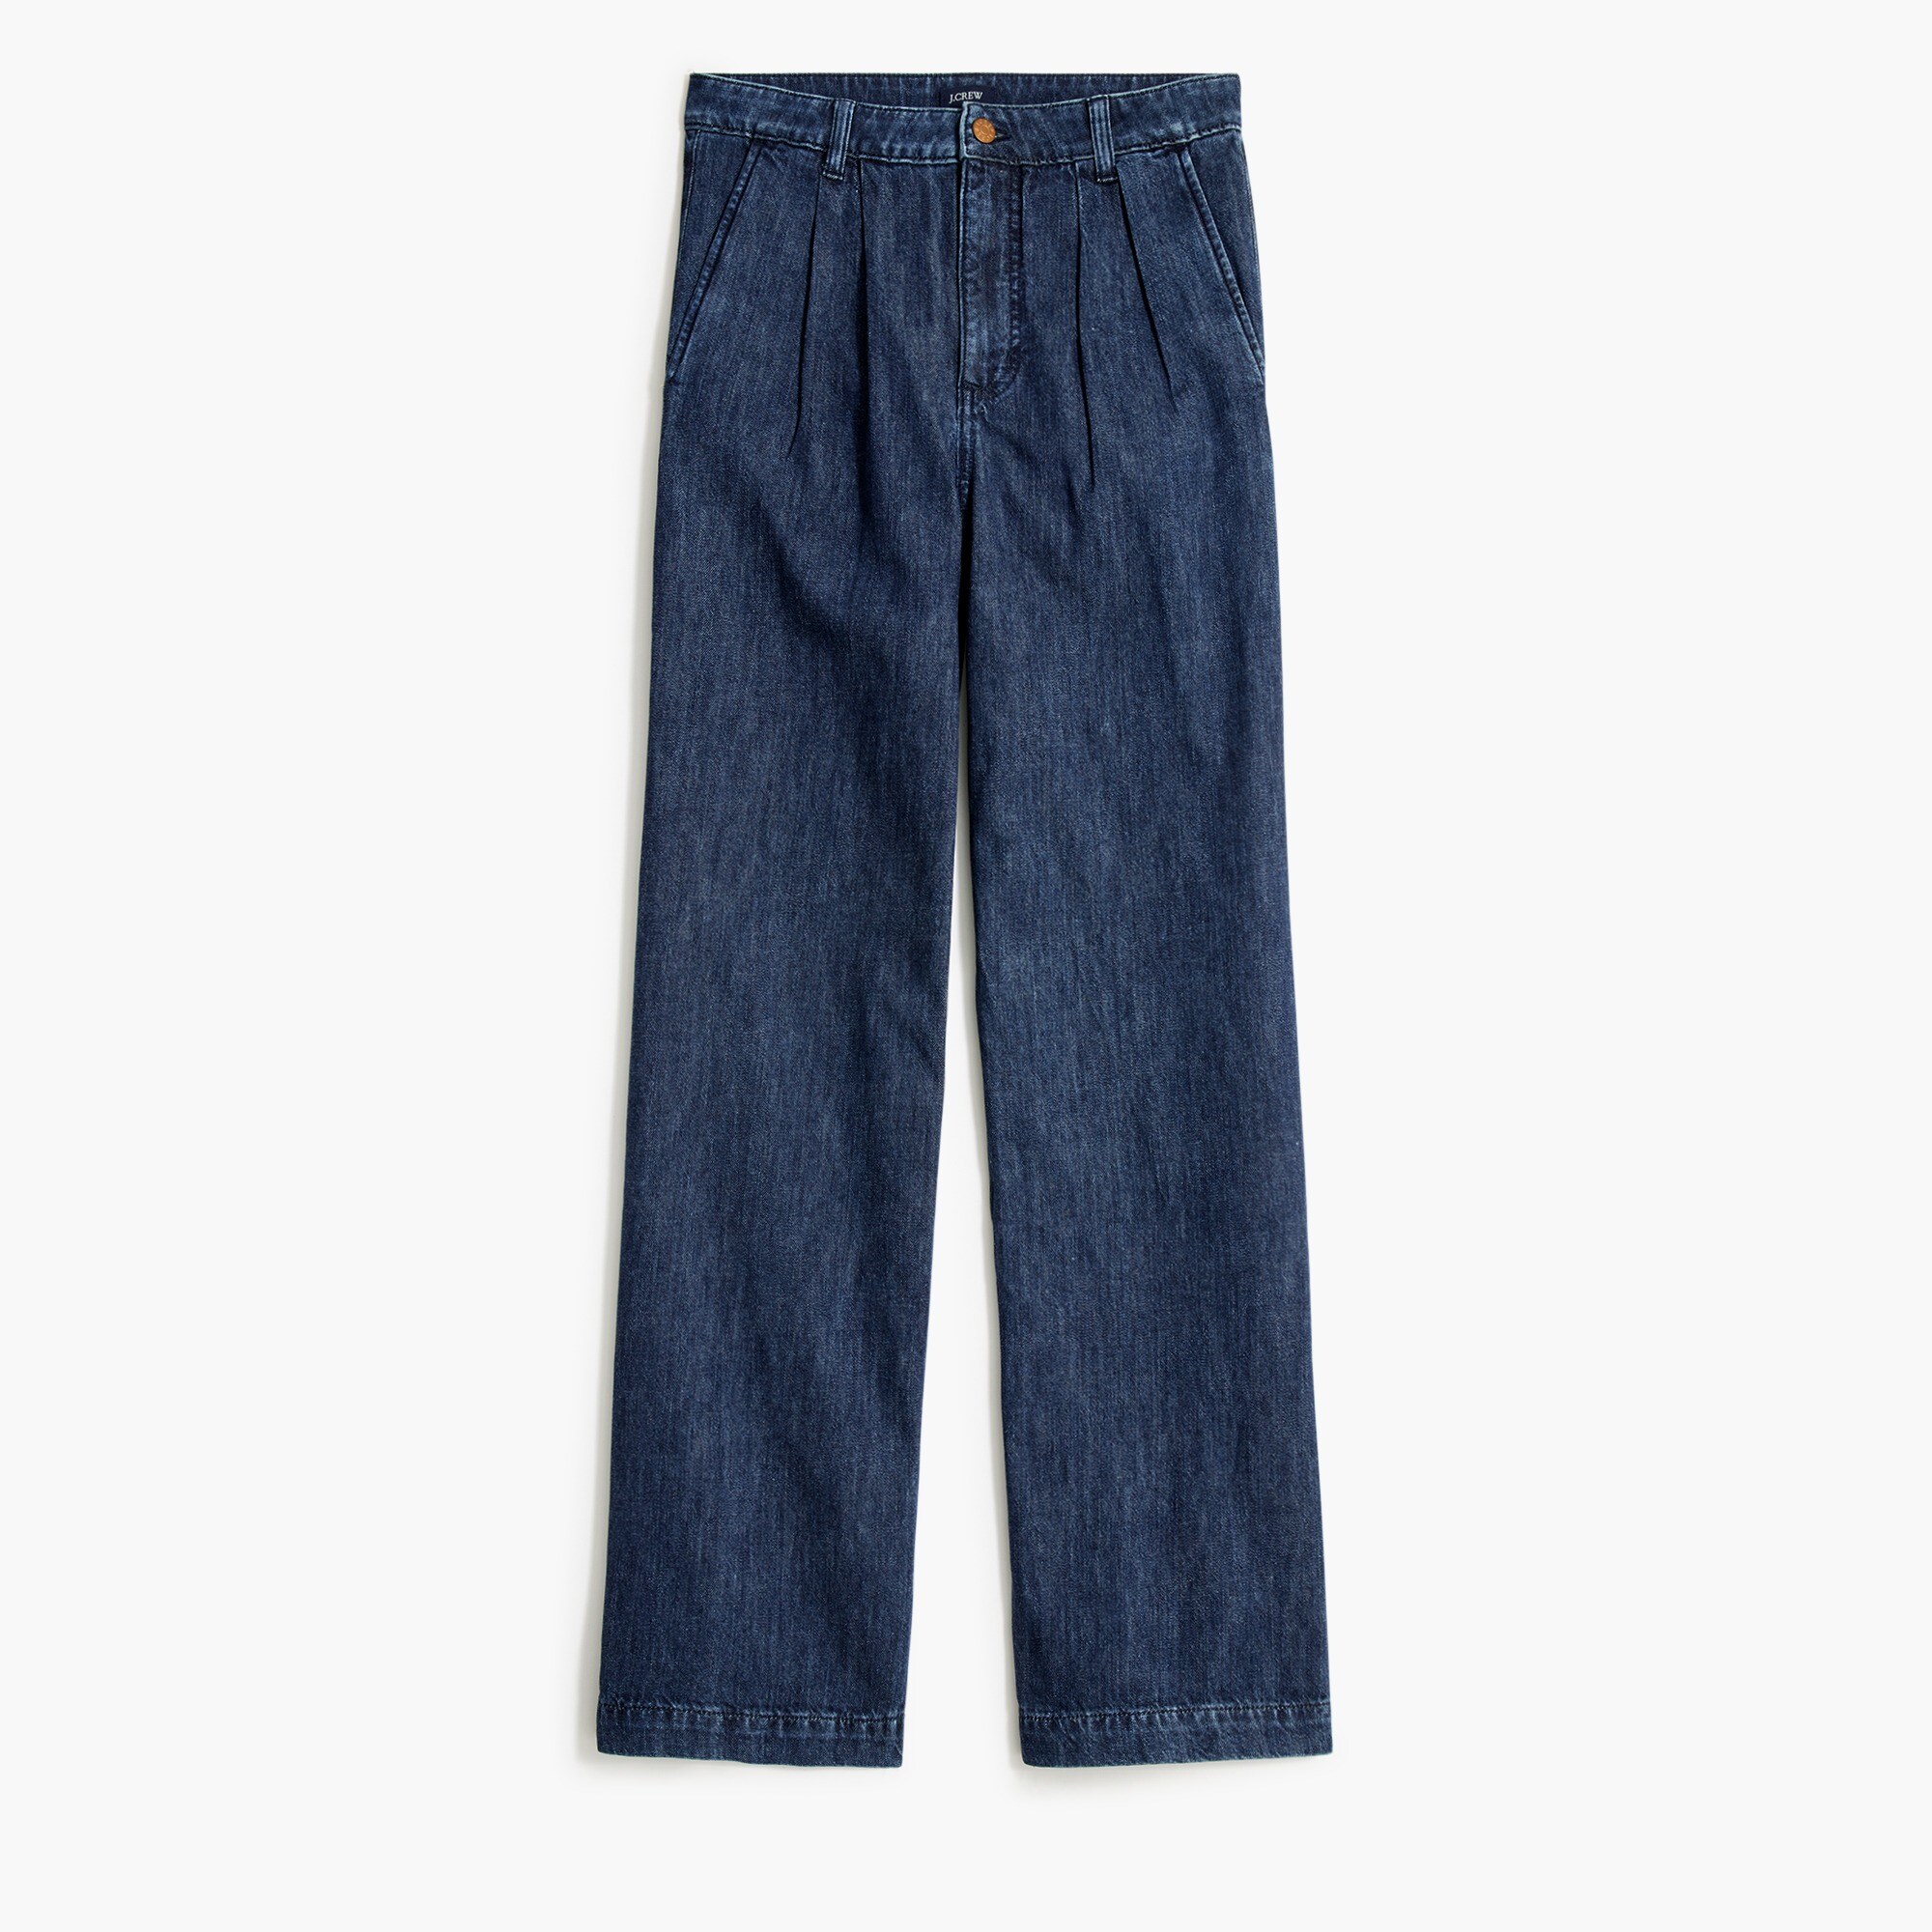  Pleated trouser jean